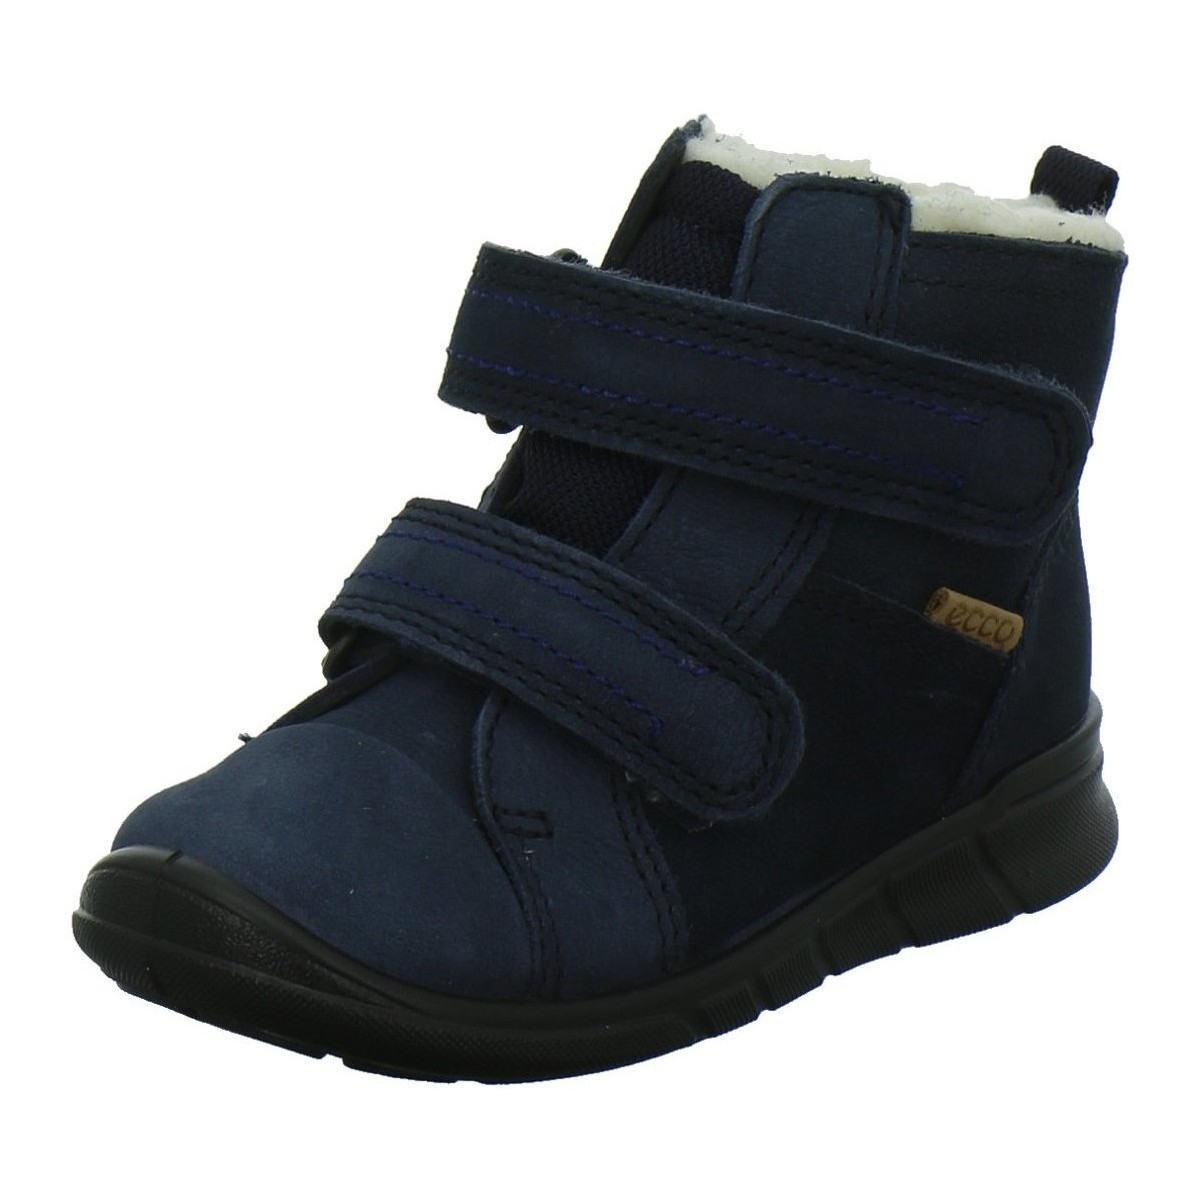 Chaussures Garçon Simplistic mid-cut in soft ECCO leather  Bleu